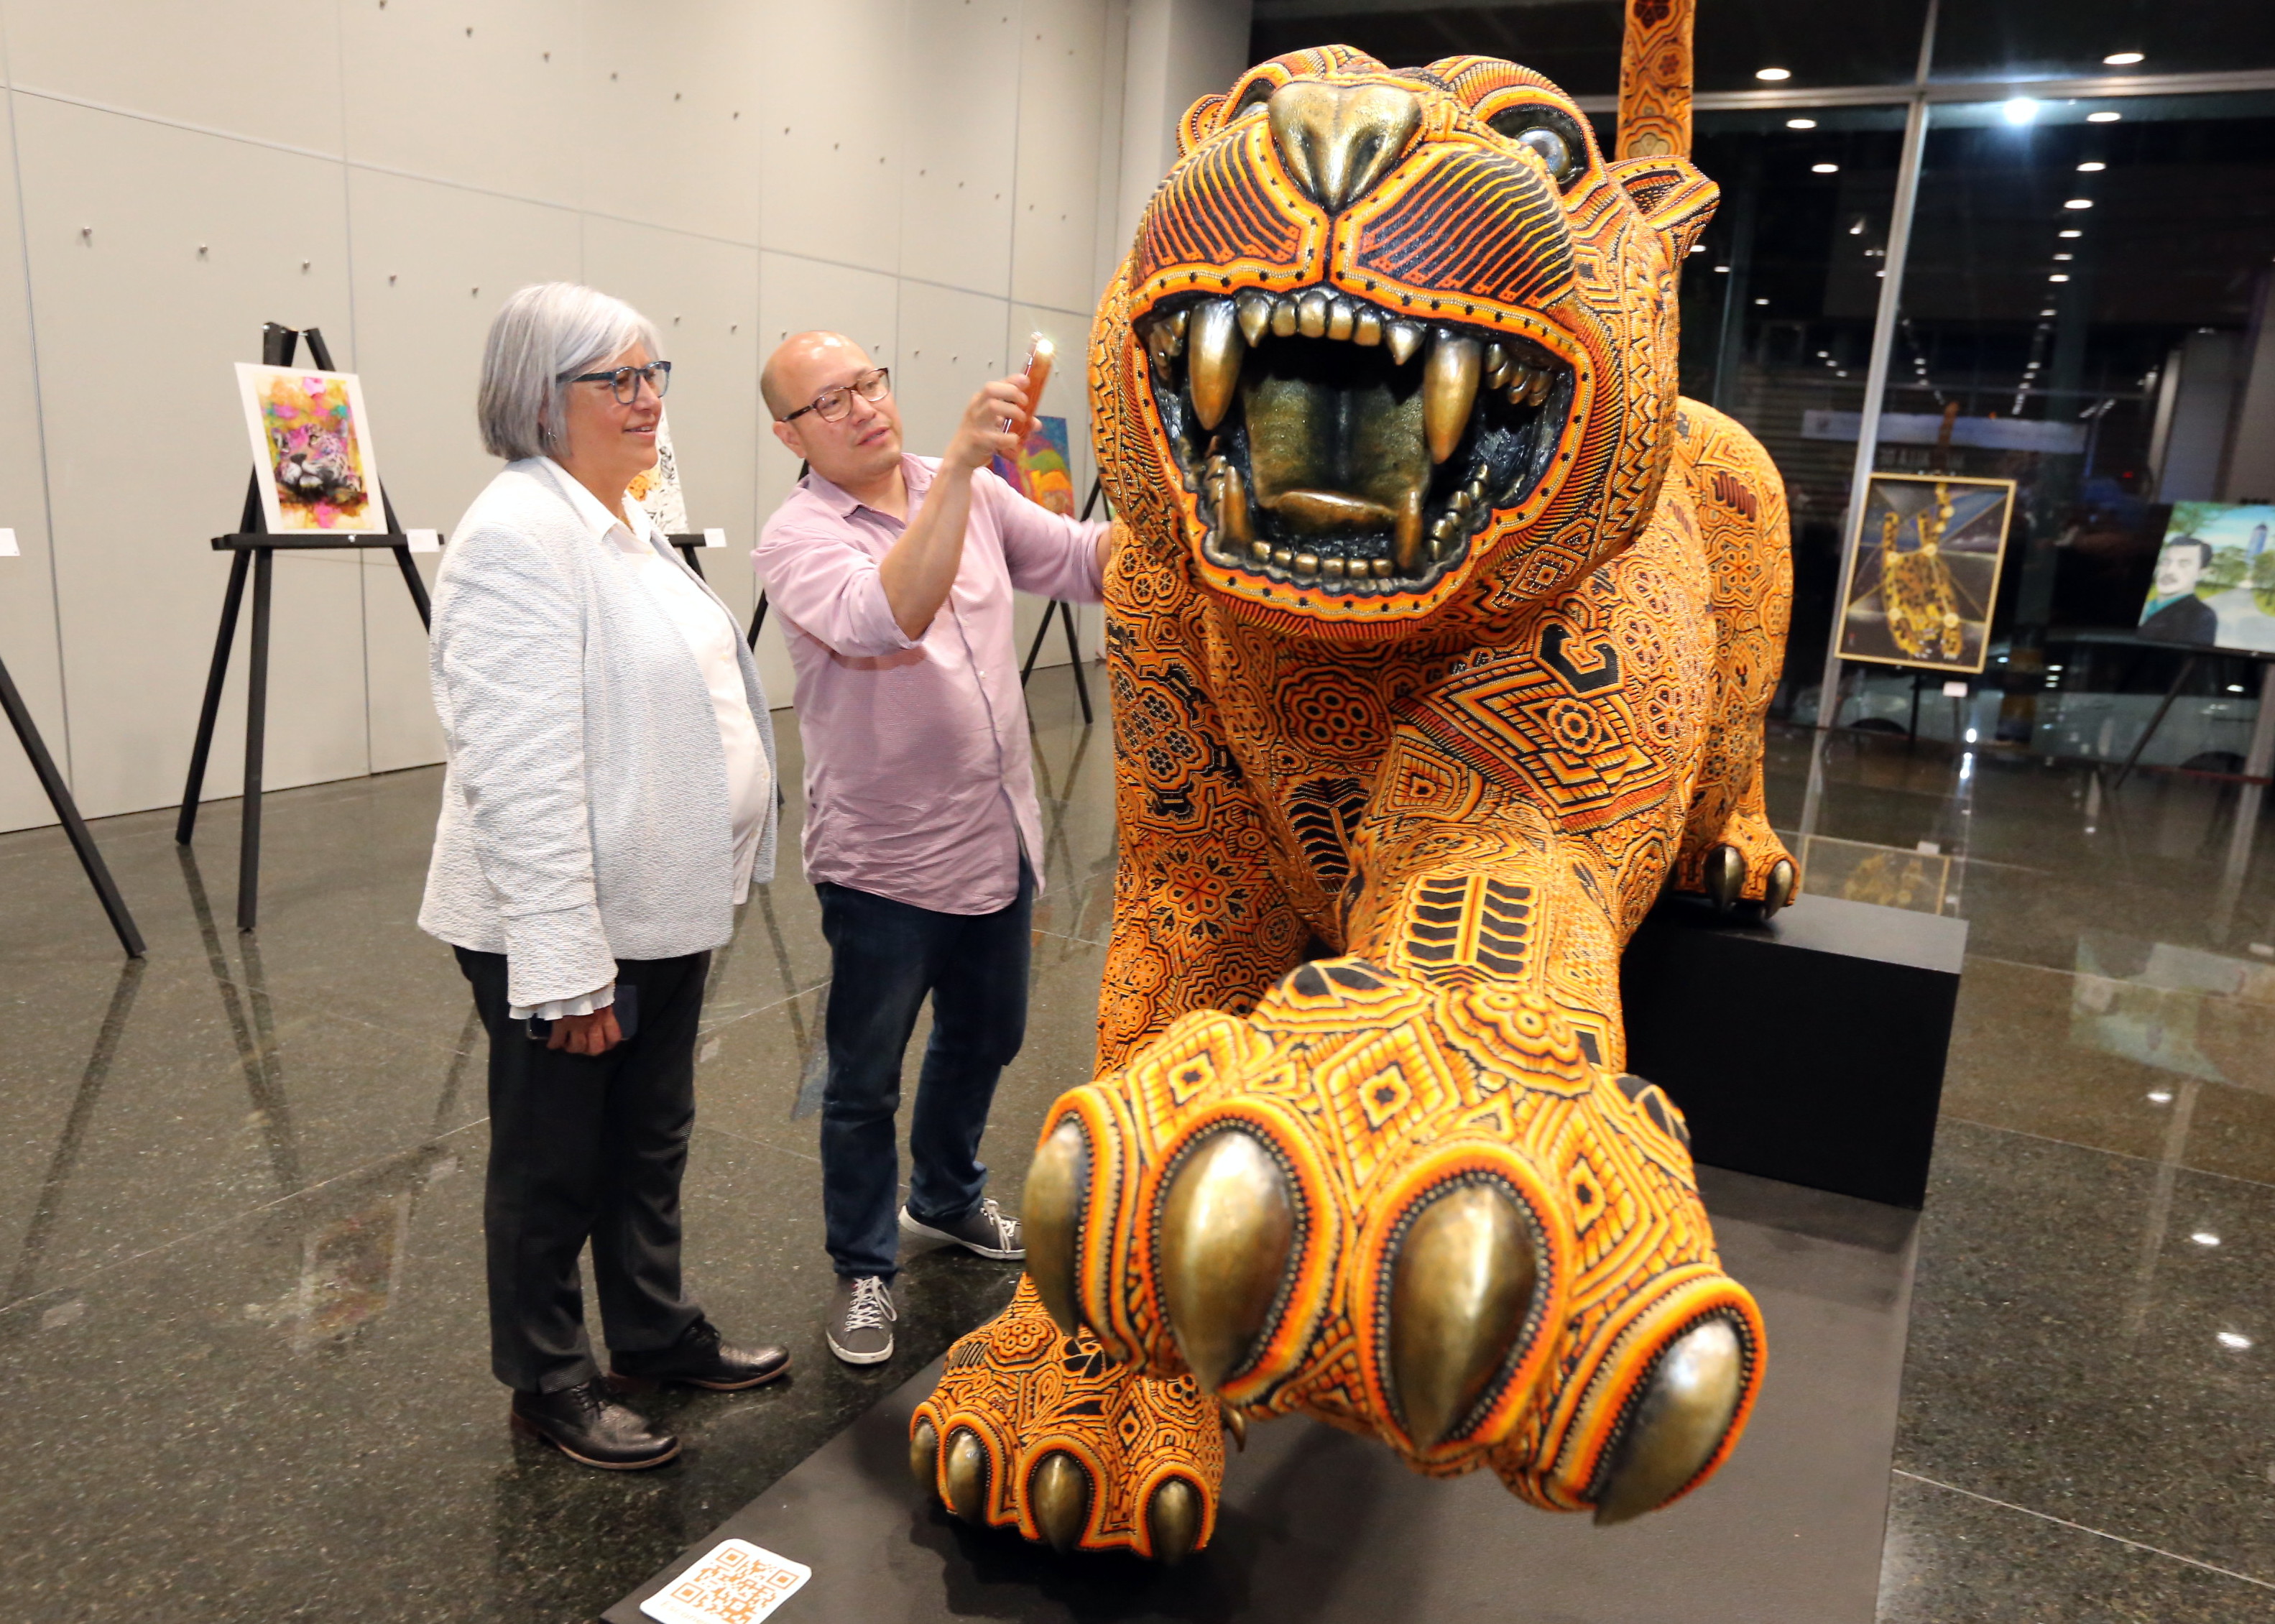 Exposición sobre el Jaguar “Más allá de las manchas” en el Centro Internacional de Negocios de la Secretaría de Economía